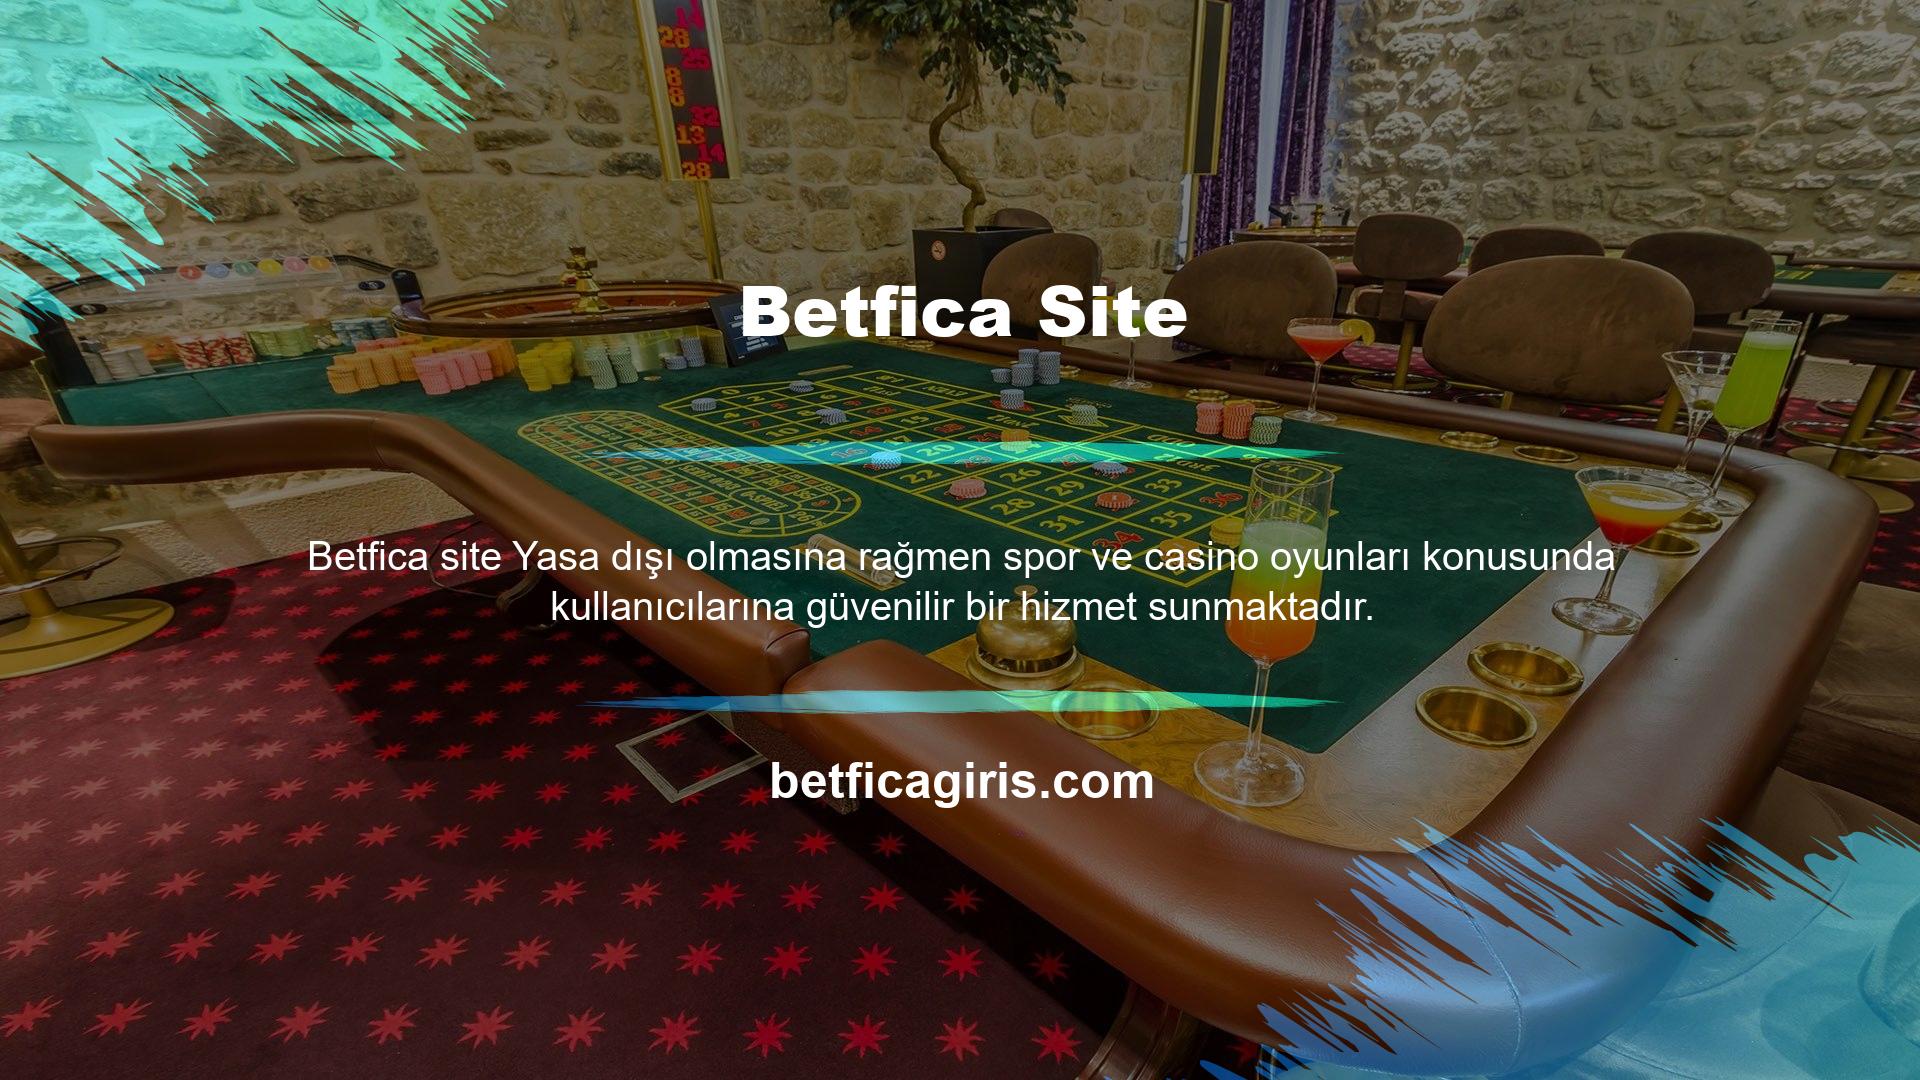 Betfica, canlı bahis sitelerinin kullanıcılarına bu tür hizmetleri sağlamak için hemen her kategoriden lisanslı şirketlerle çalışmaktadır